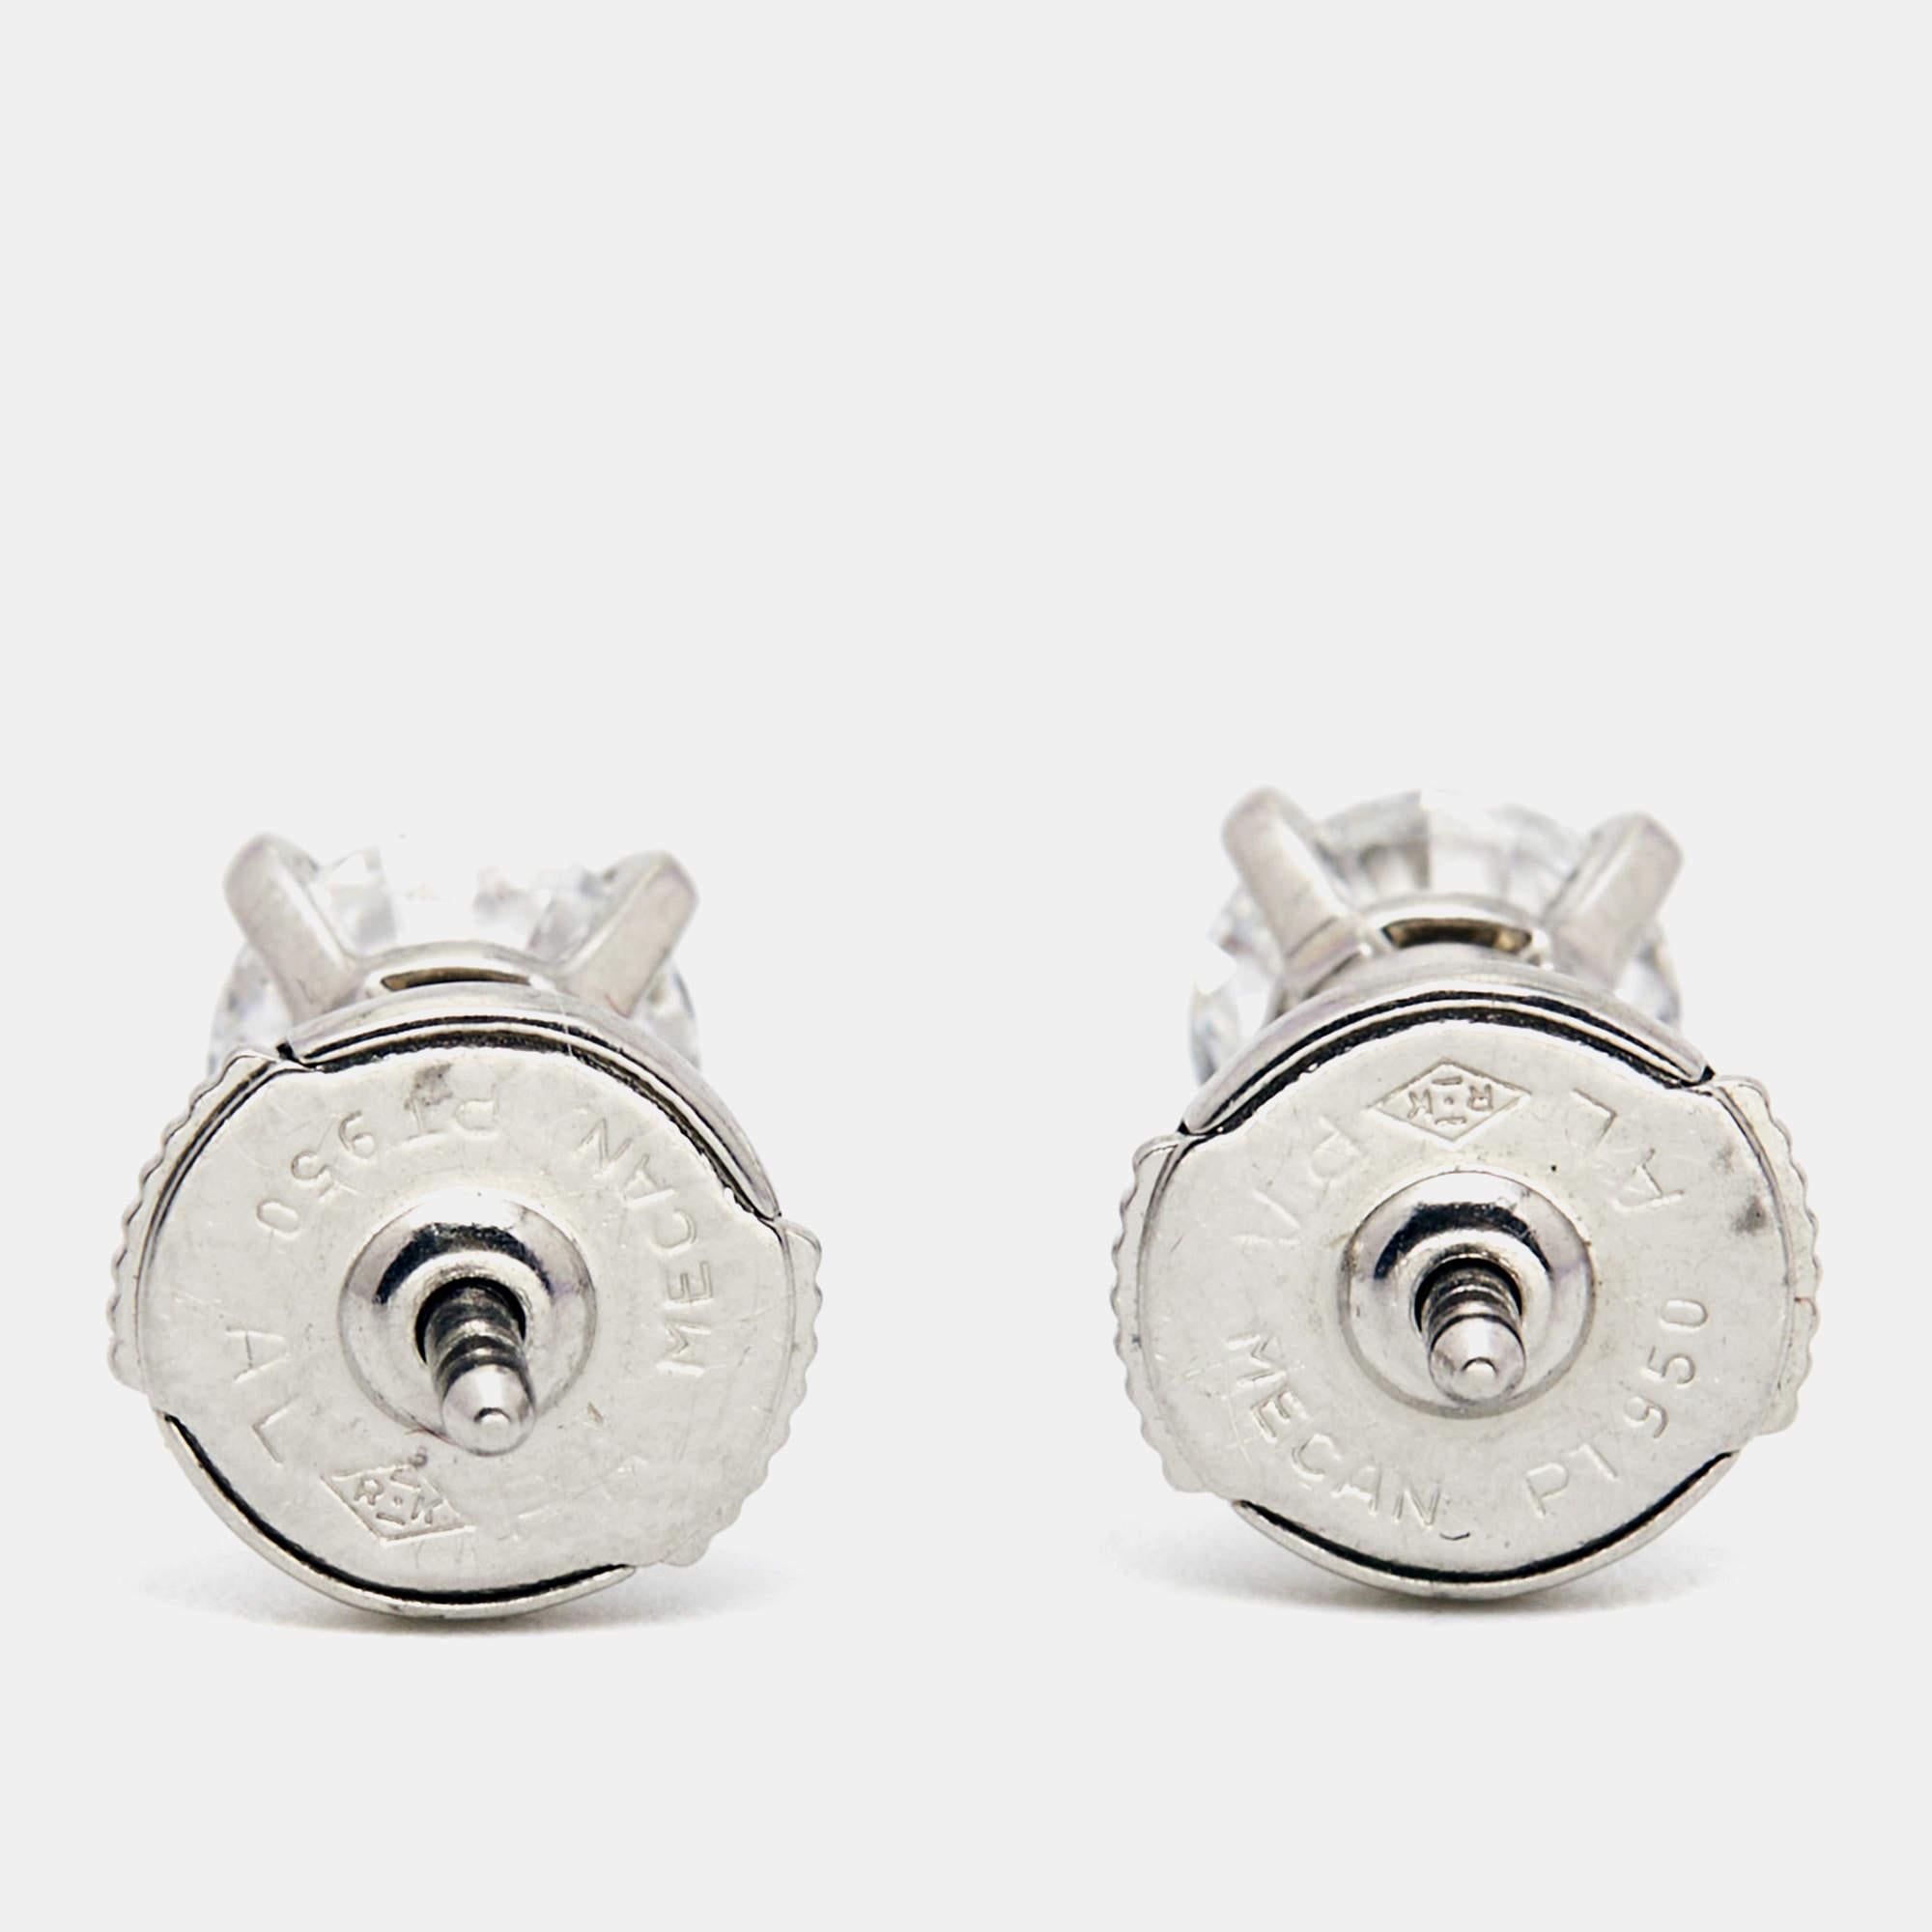 1895 earrings